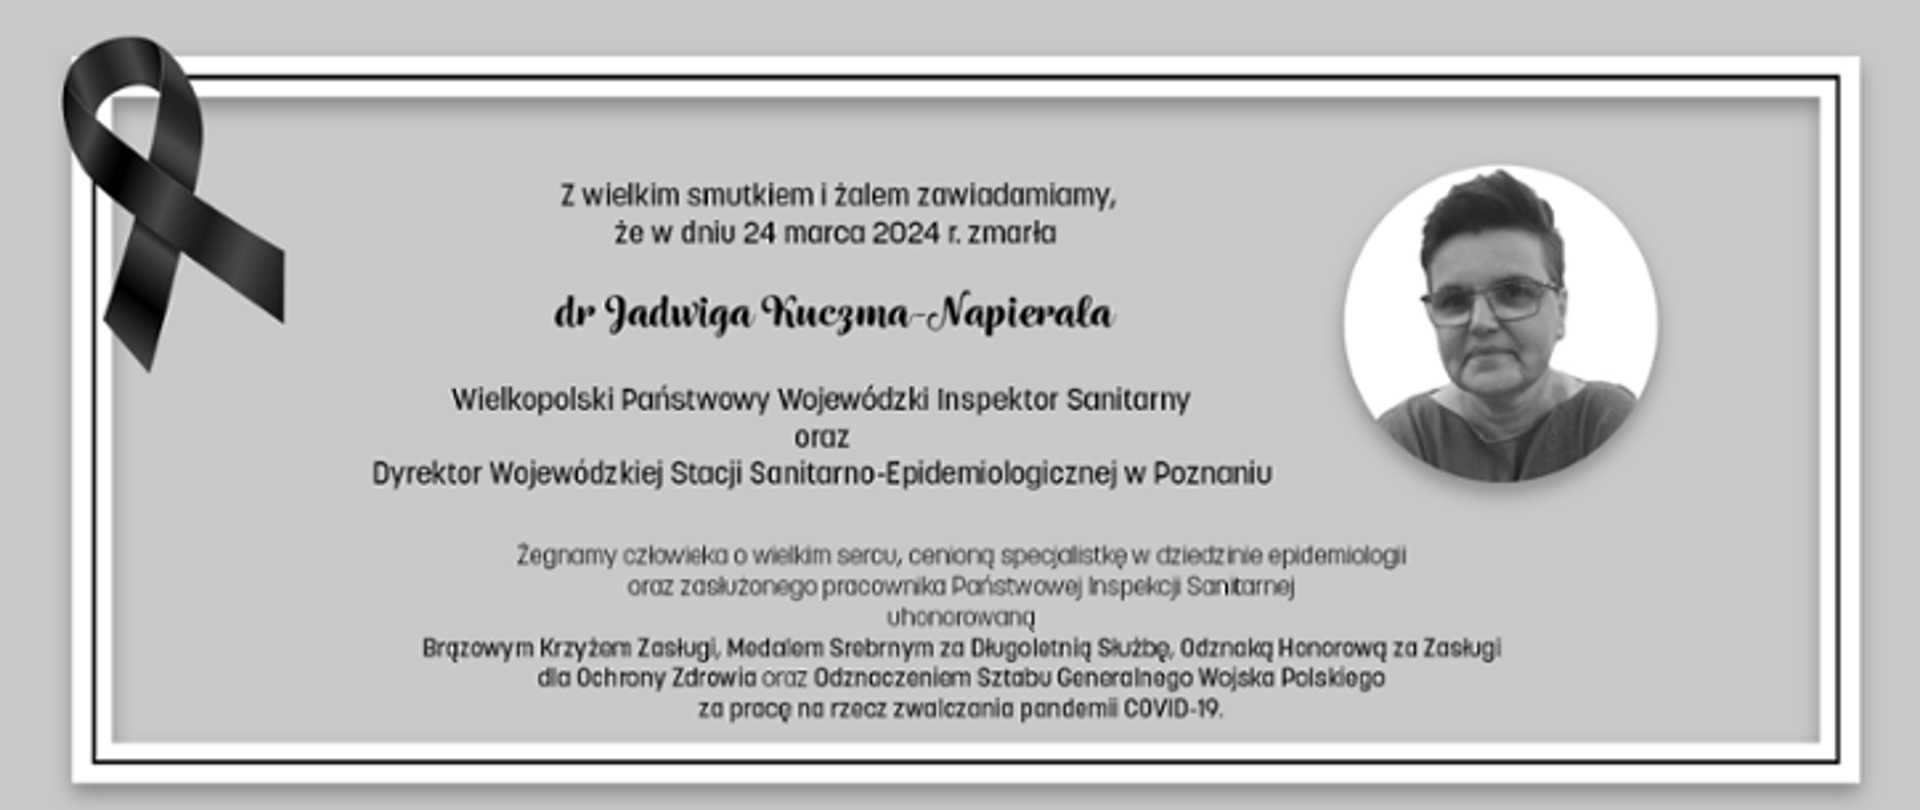 Z wielkim smutkiem i żalem zawiadamiamy, że 24 marca 2024 r. zmarła dr Jadwiga Kuczma-Napierala, Wielkopolski Państwowy Wojewódzki Inspektor Sanitarny oraz Dyrektor Wojewódzkiej Stacji Sanitarno-Epidemilogicznej w Poznaniu. Żegnamy człowieka o wielkim sercu, cenioną specjalistkę w dziedzinie epidemiologii oraz zasłużonego pracownika Państwowej Inspekcji Sanitarnej, uhonorowaną Brązowym Krzyżem Zasługi, Medalem Srebrnym za Długoletnią Służbę, Odznaką Honorową za Zasługi dla Ochrony Zdrowia oraz Odznaczeniem Sztabu Generalnego Wojska Polskiego za pracę na rzecz zwalczania pandemii COVID-19